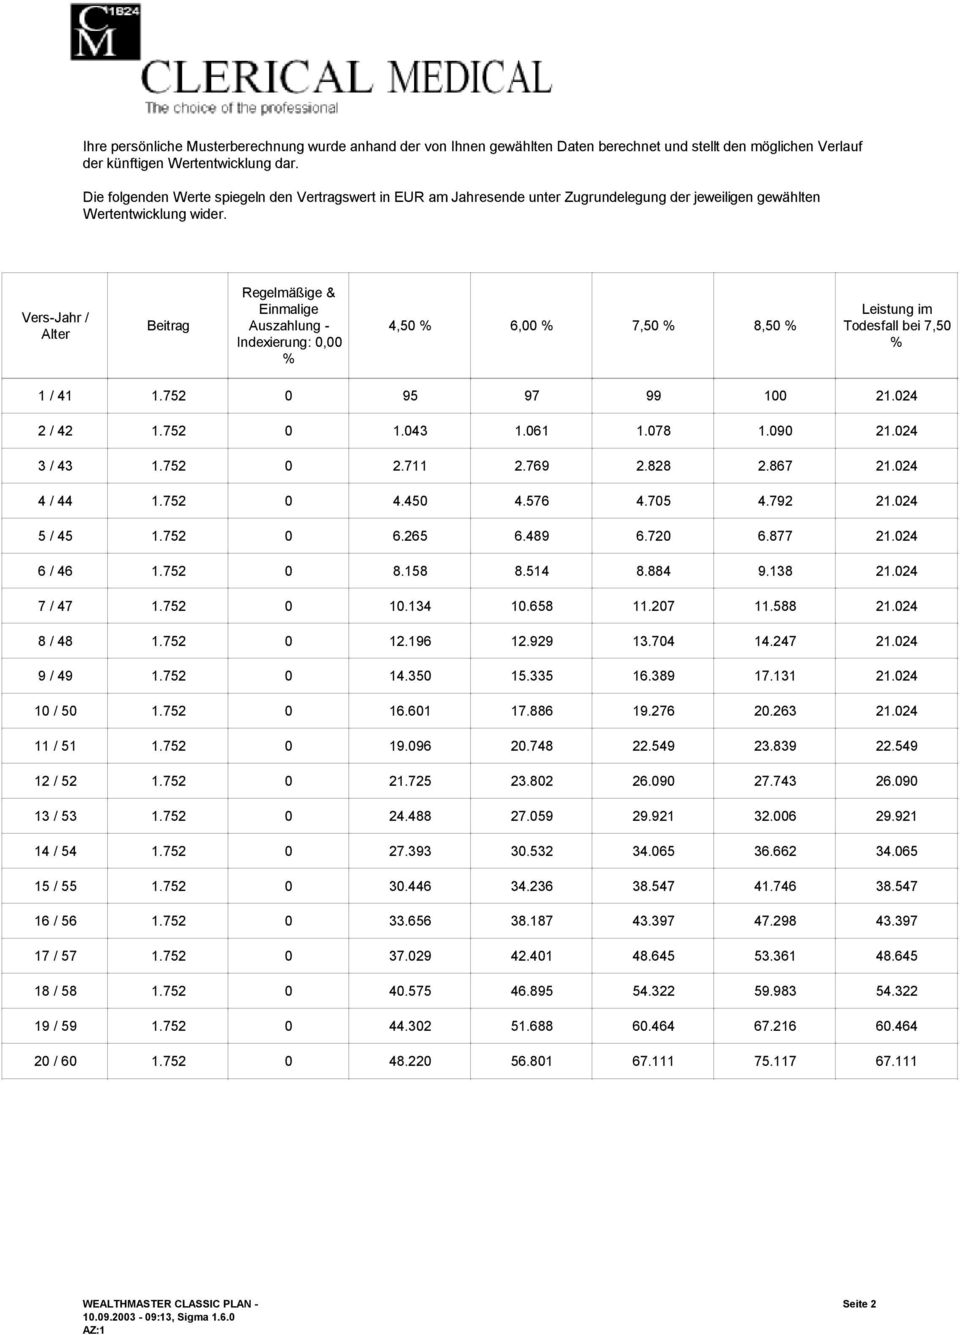 Ves-Jah / Alte Beitag Regelmäßige & Einmalige Auszahlung - Indexieung: 0,00 % 4,50 % 6,00 % 7,50 % 8,50 % Leistung im Todesfall bei 7,50 % 1 / 41 1.752 0 95 97 99 100 21.024 2 / 42 1.752 0 1.043 1.